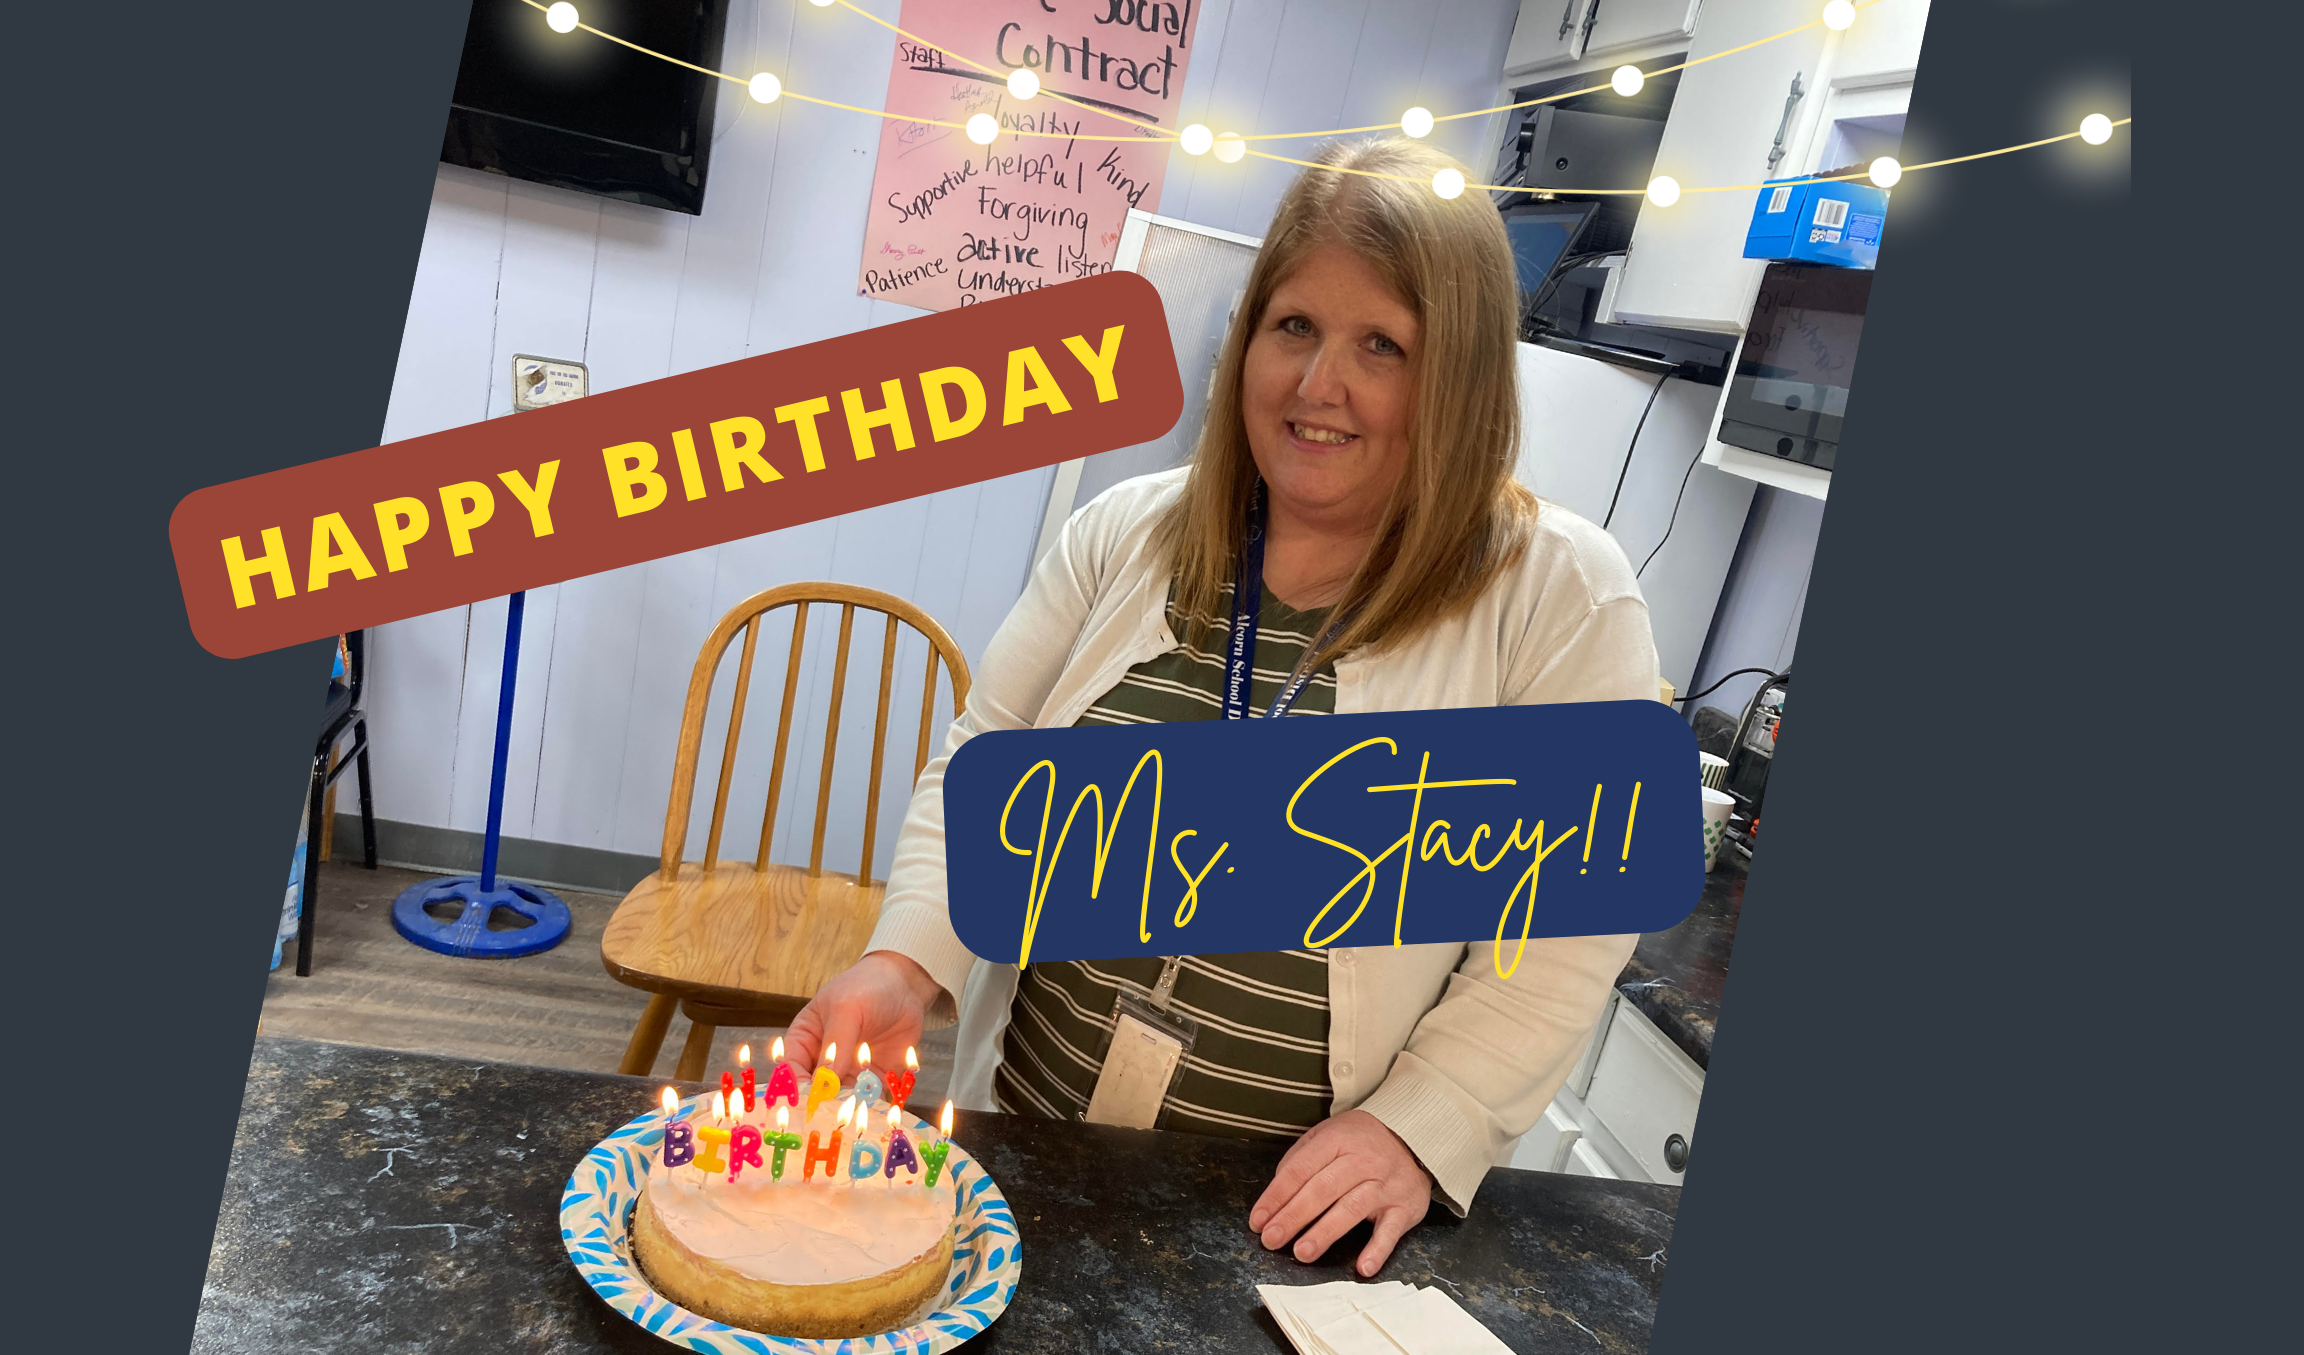 Happy Birthday Ms. Stacy! #AAEC